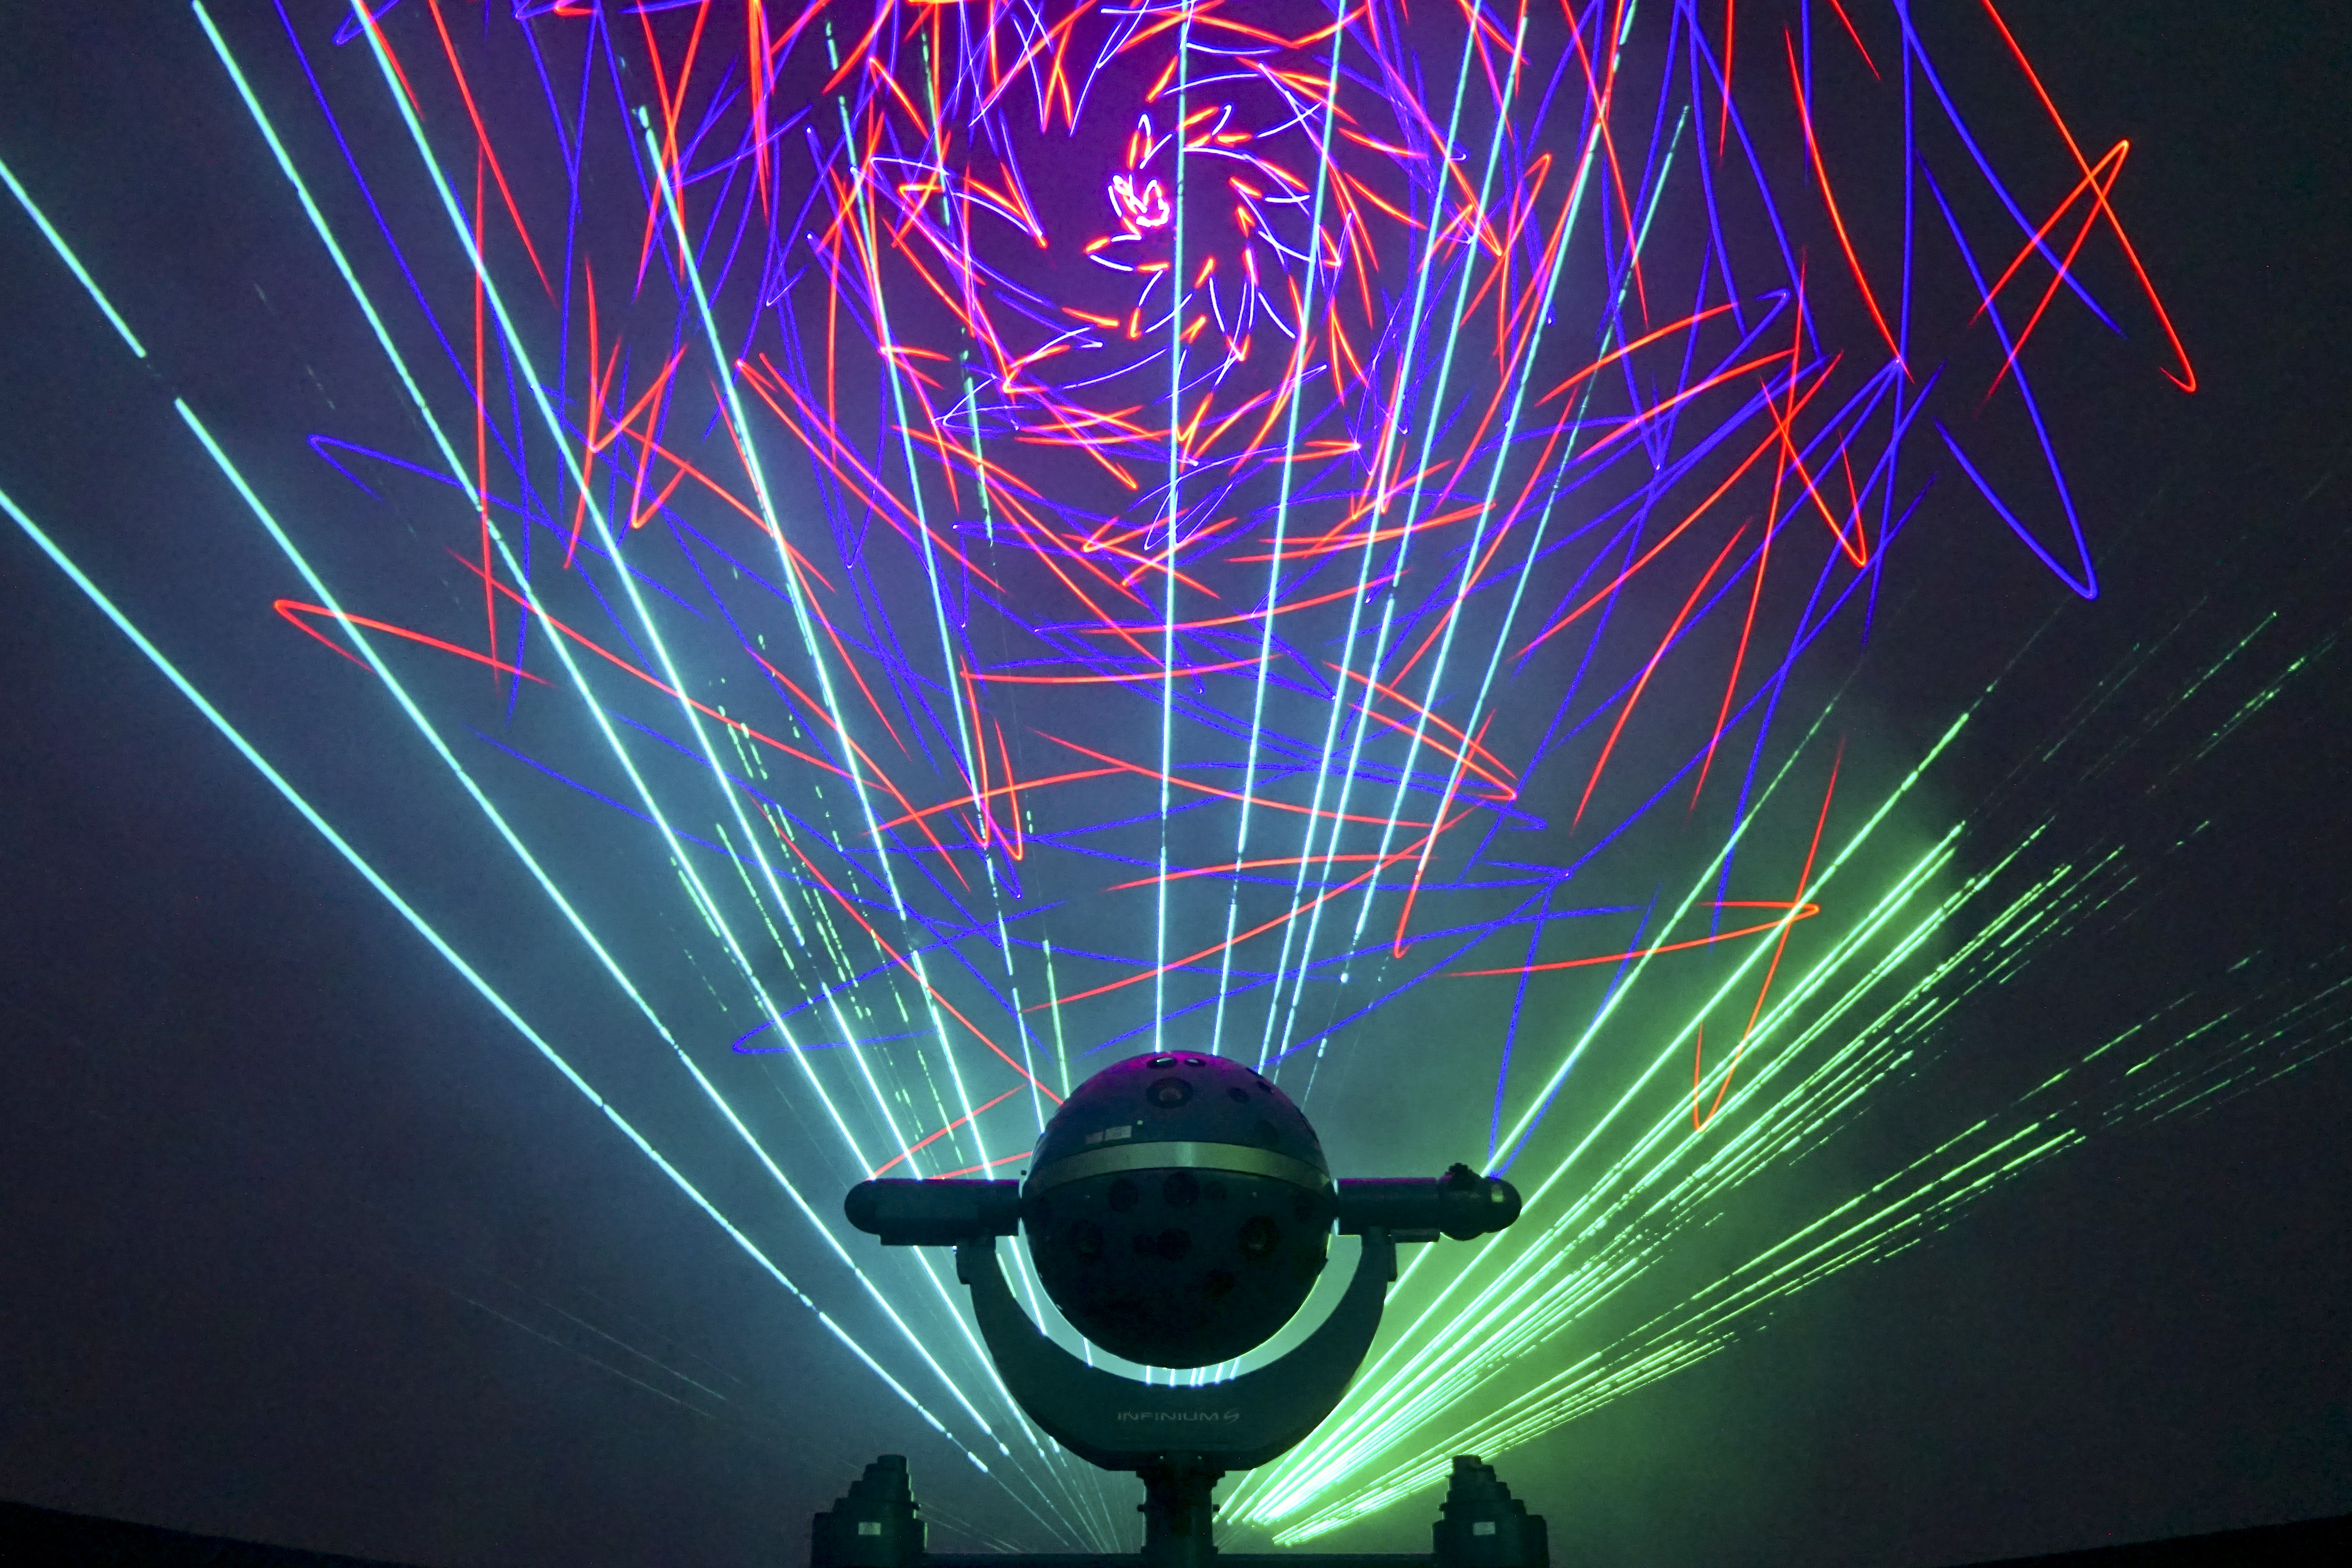 planetarium laser show